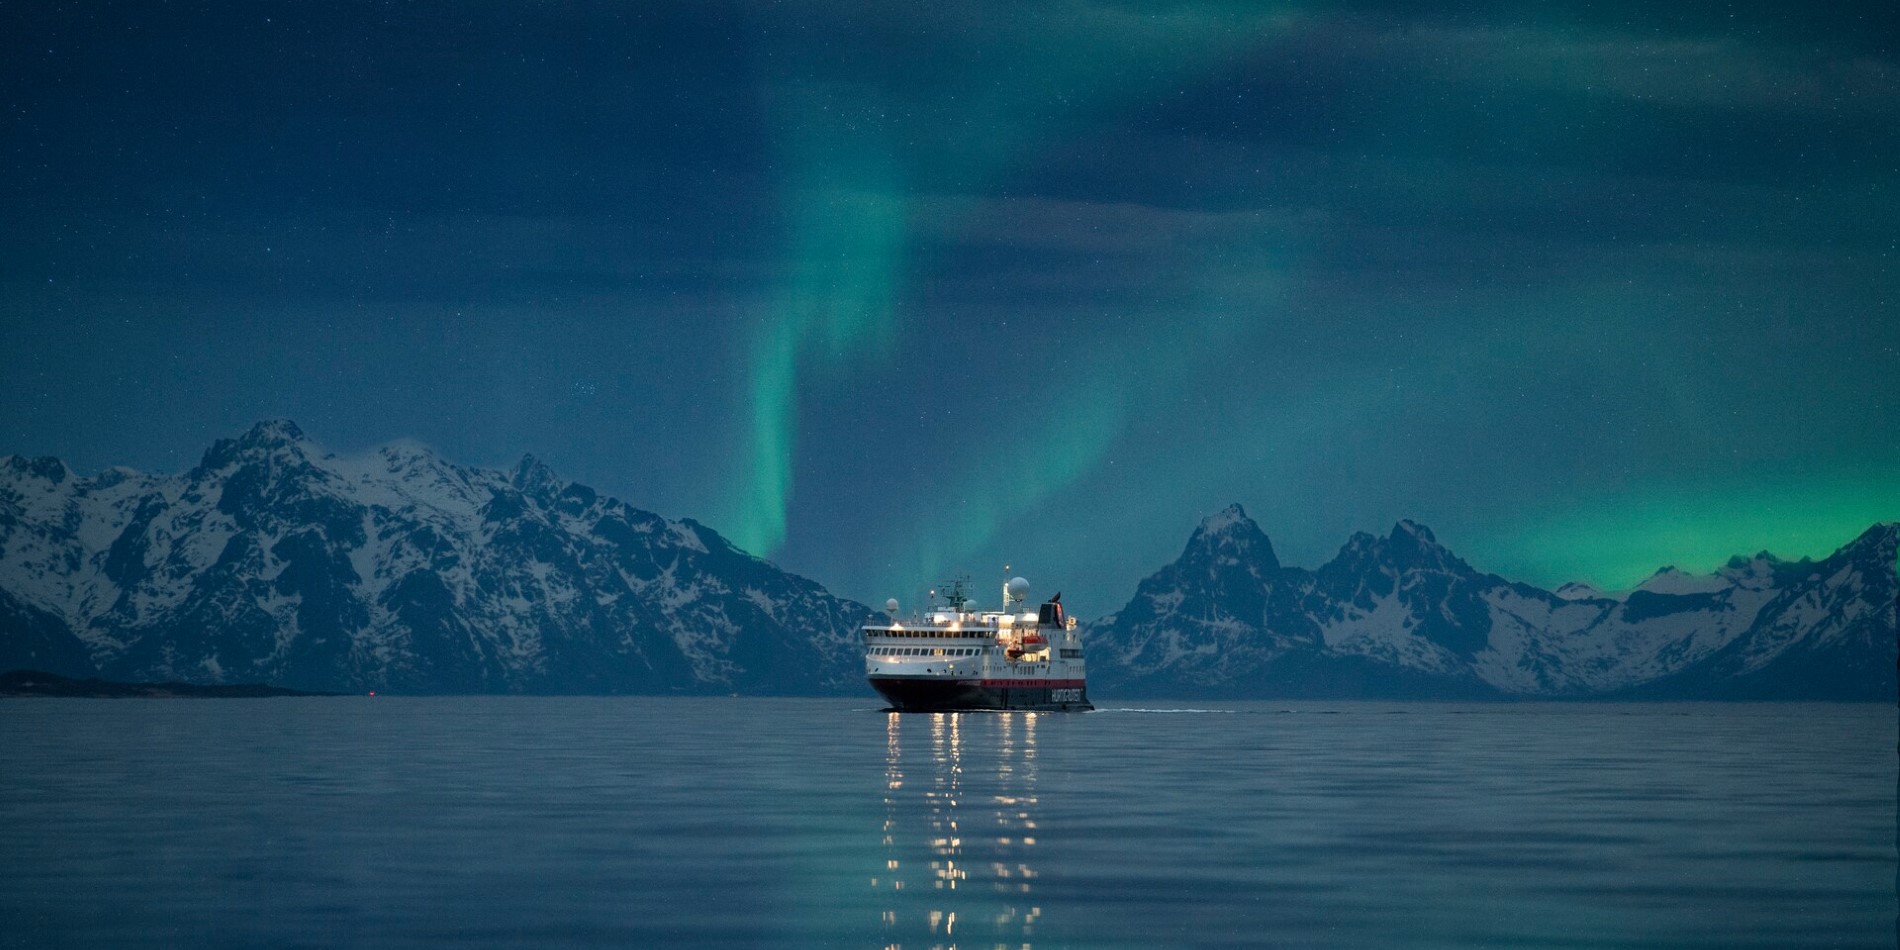 Et Hurtigrutenskip som seiler i Norge med nordlyset på himmelen ovenfor